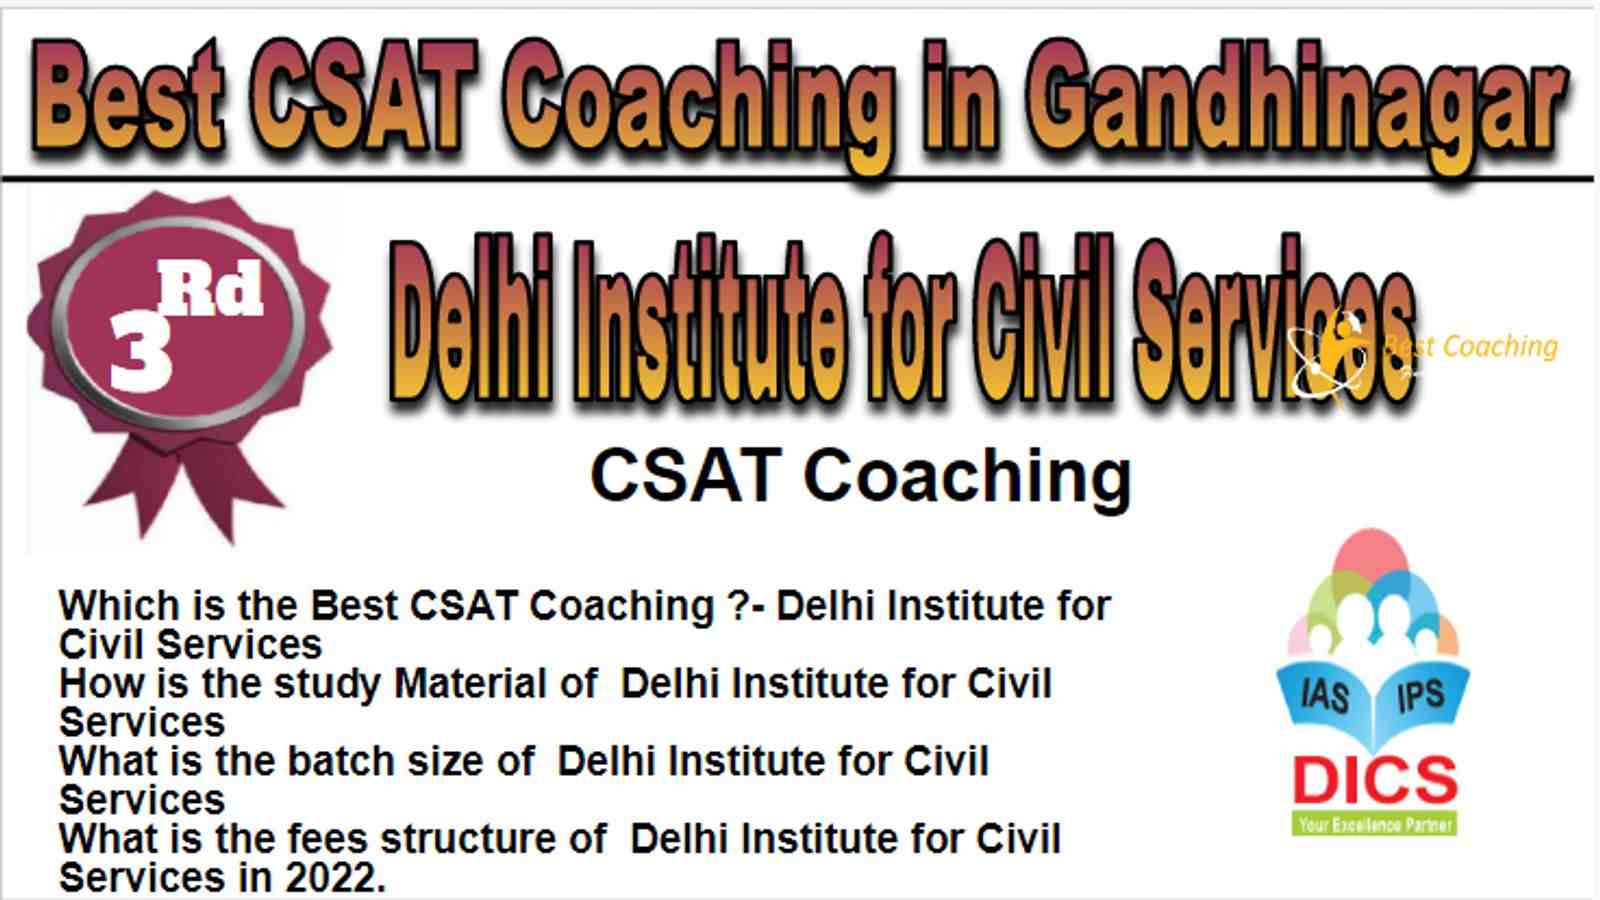 Rank 3 Best CSAT Coaching in Gandhinagar